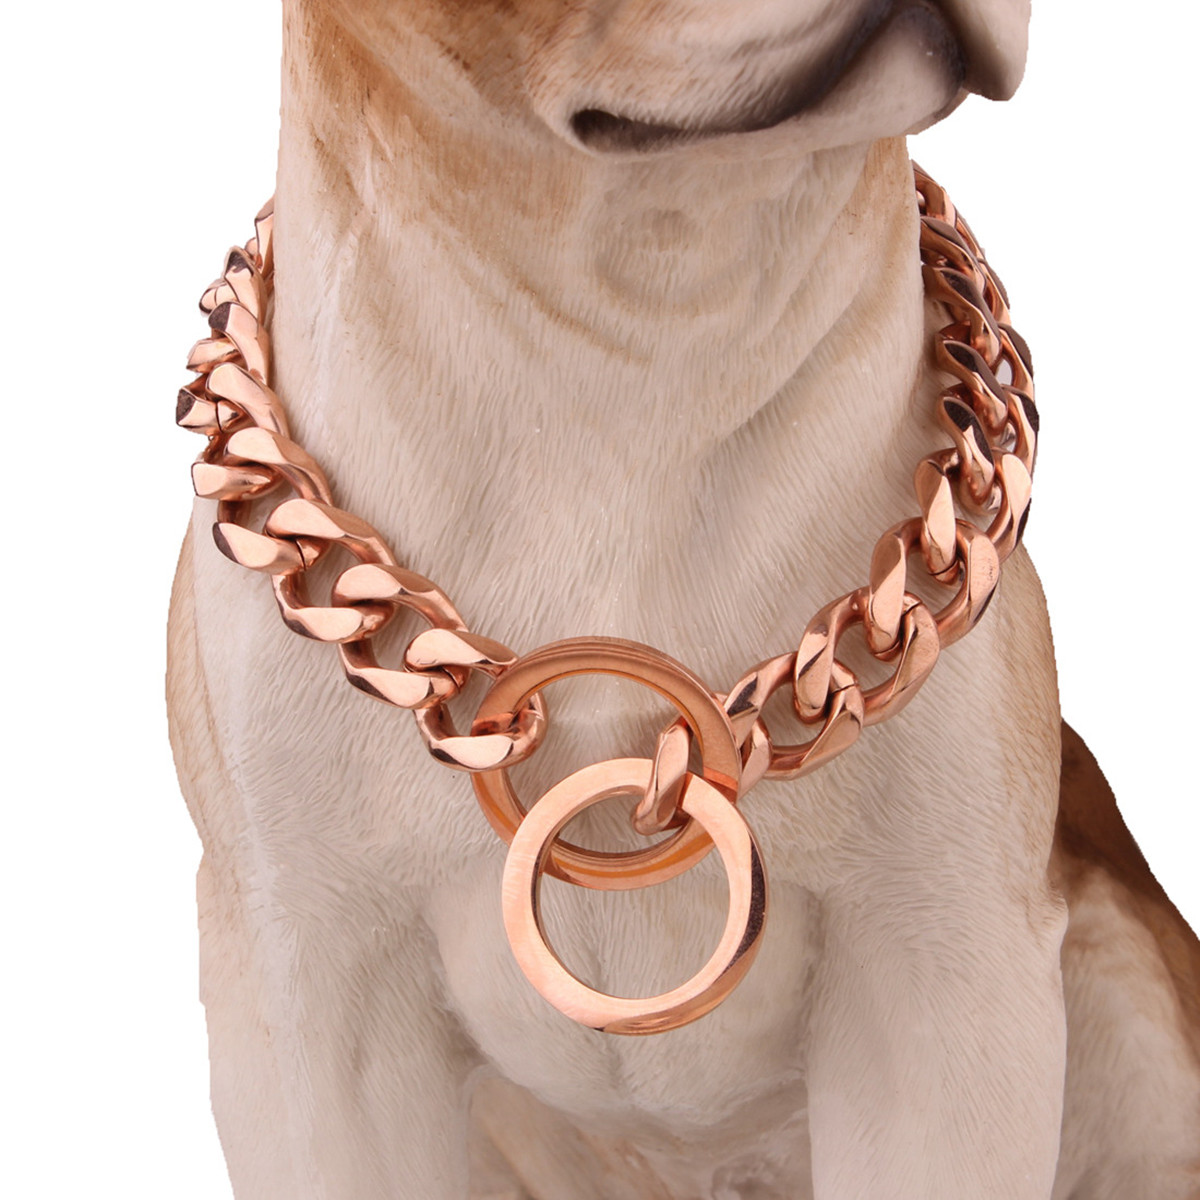 Chaine de collier de chien danimal familier Lien en acier inoxydable Choke collier solide formation en metal 7 taille pour choisir